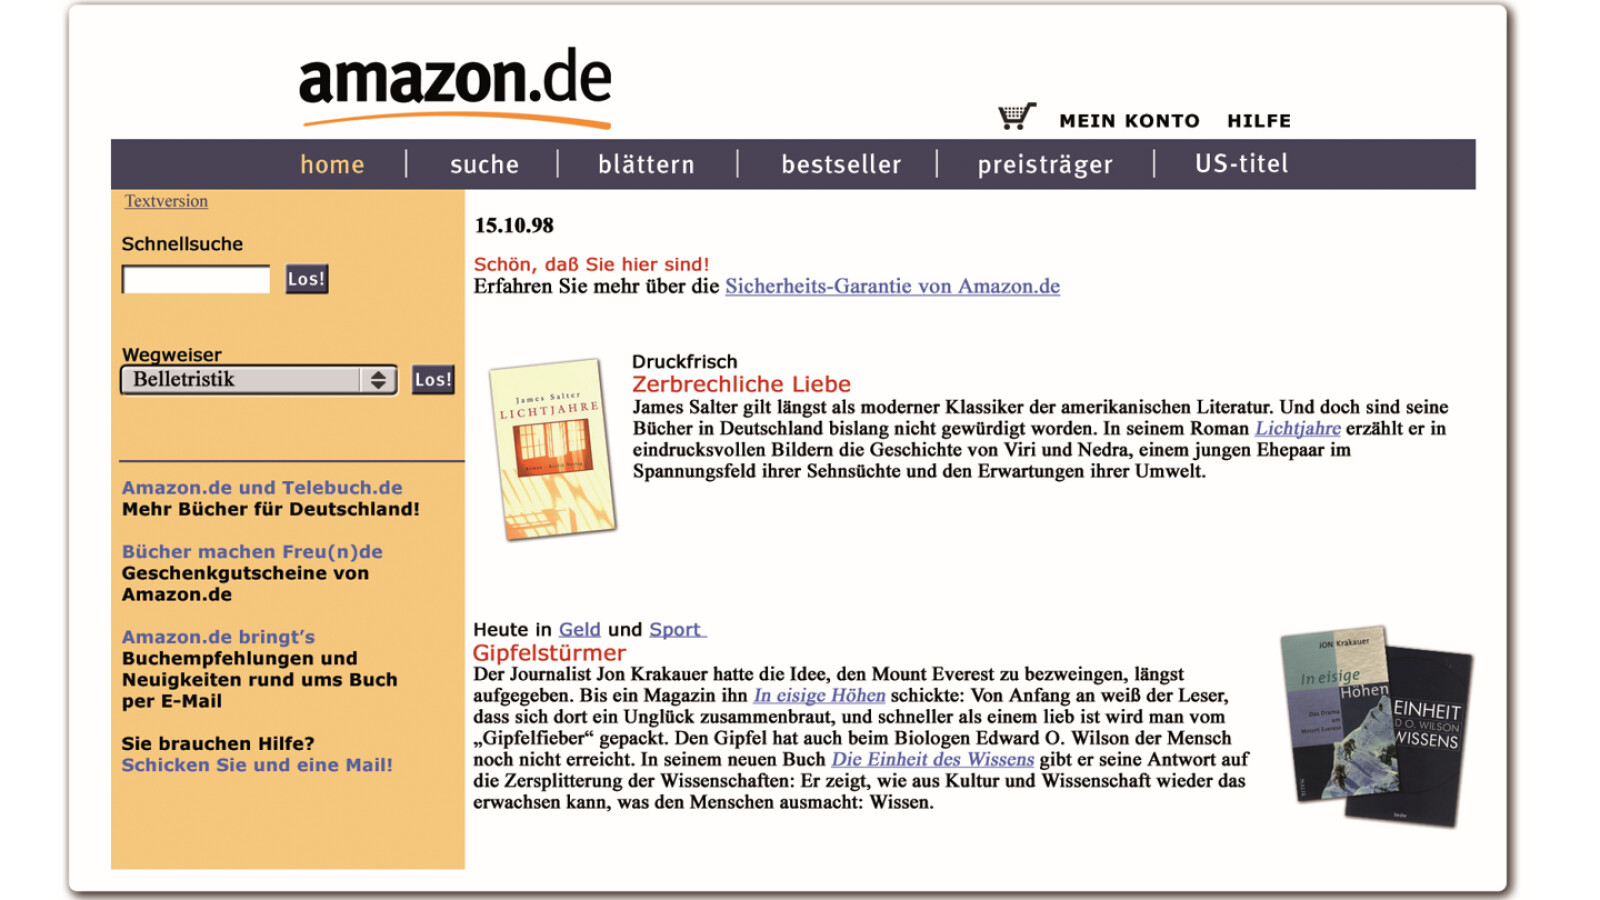 25 años en Amazon.de: los productos más populares en Alemania